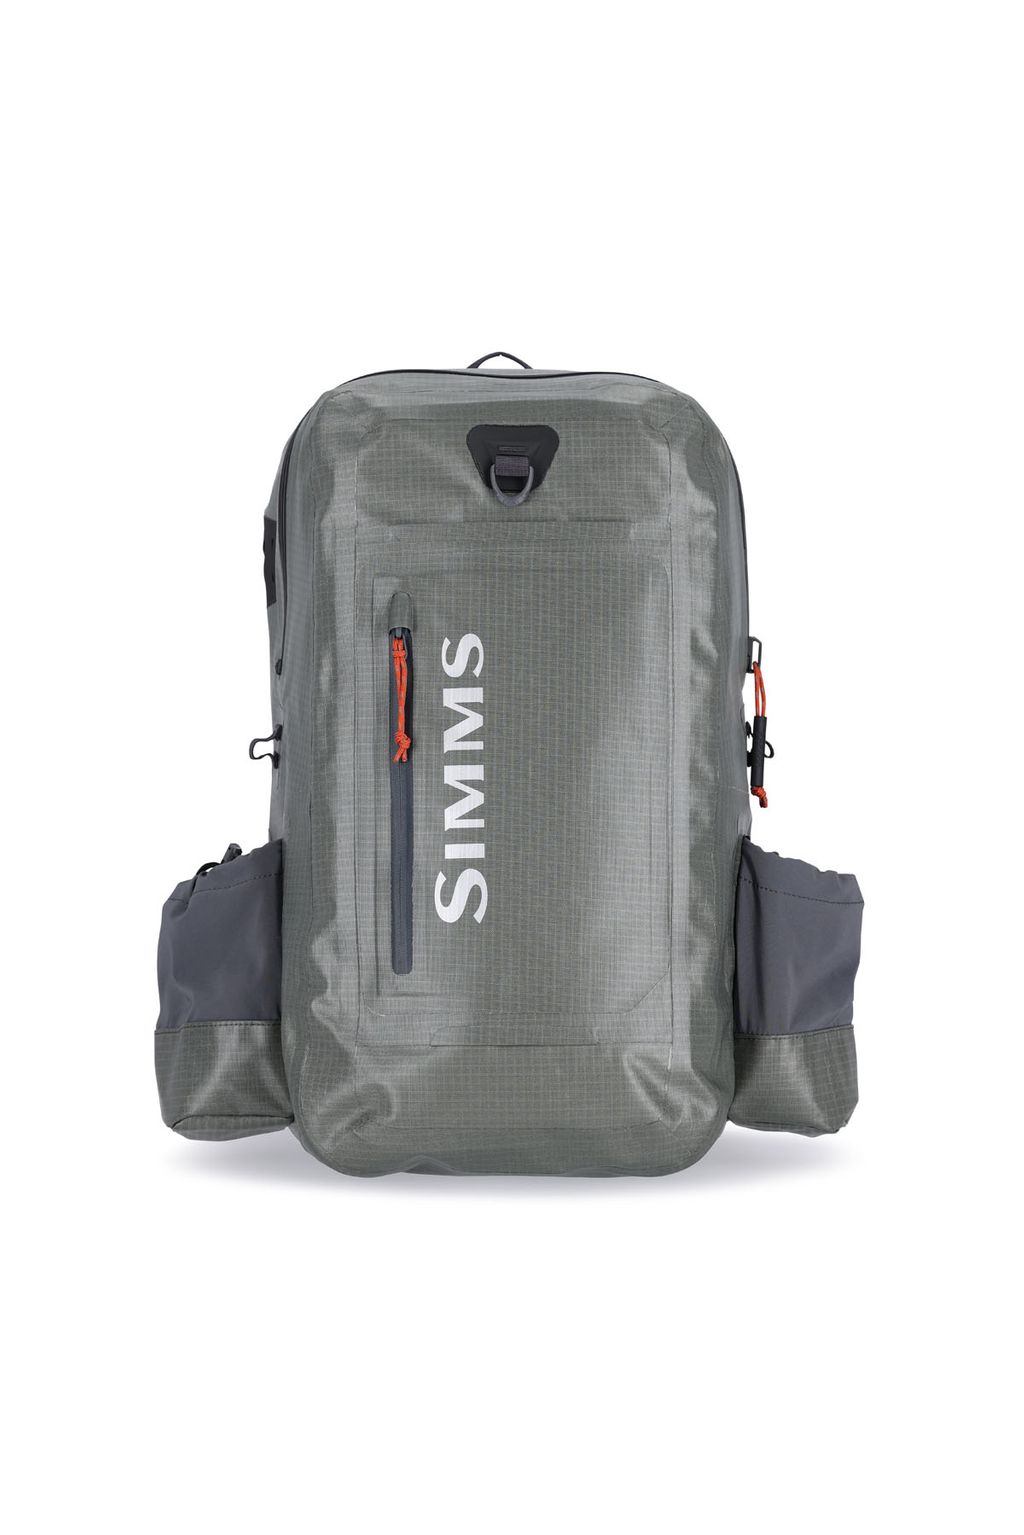 SIMMS Dry Creek® Z Backpack : Flyfish Europe AS